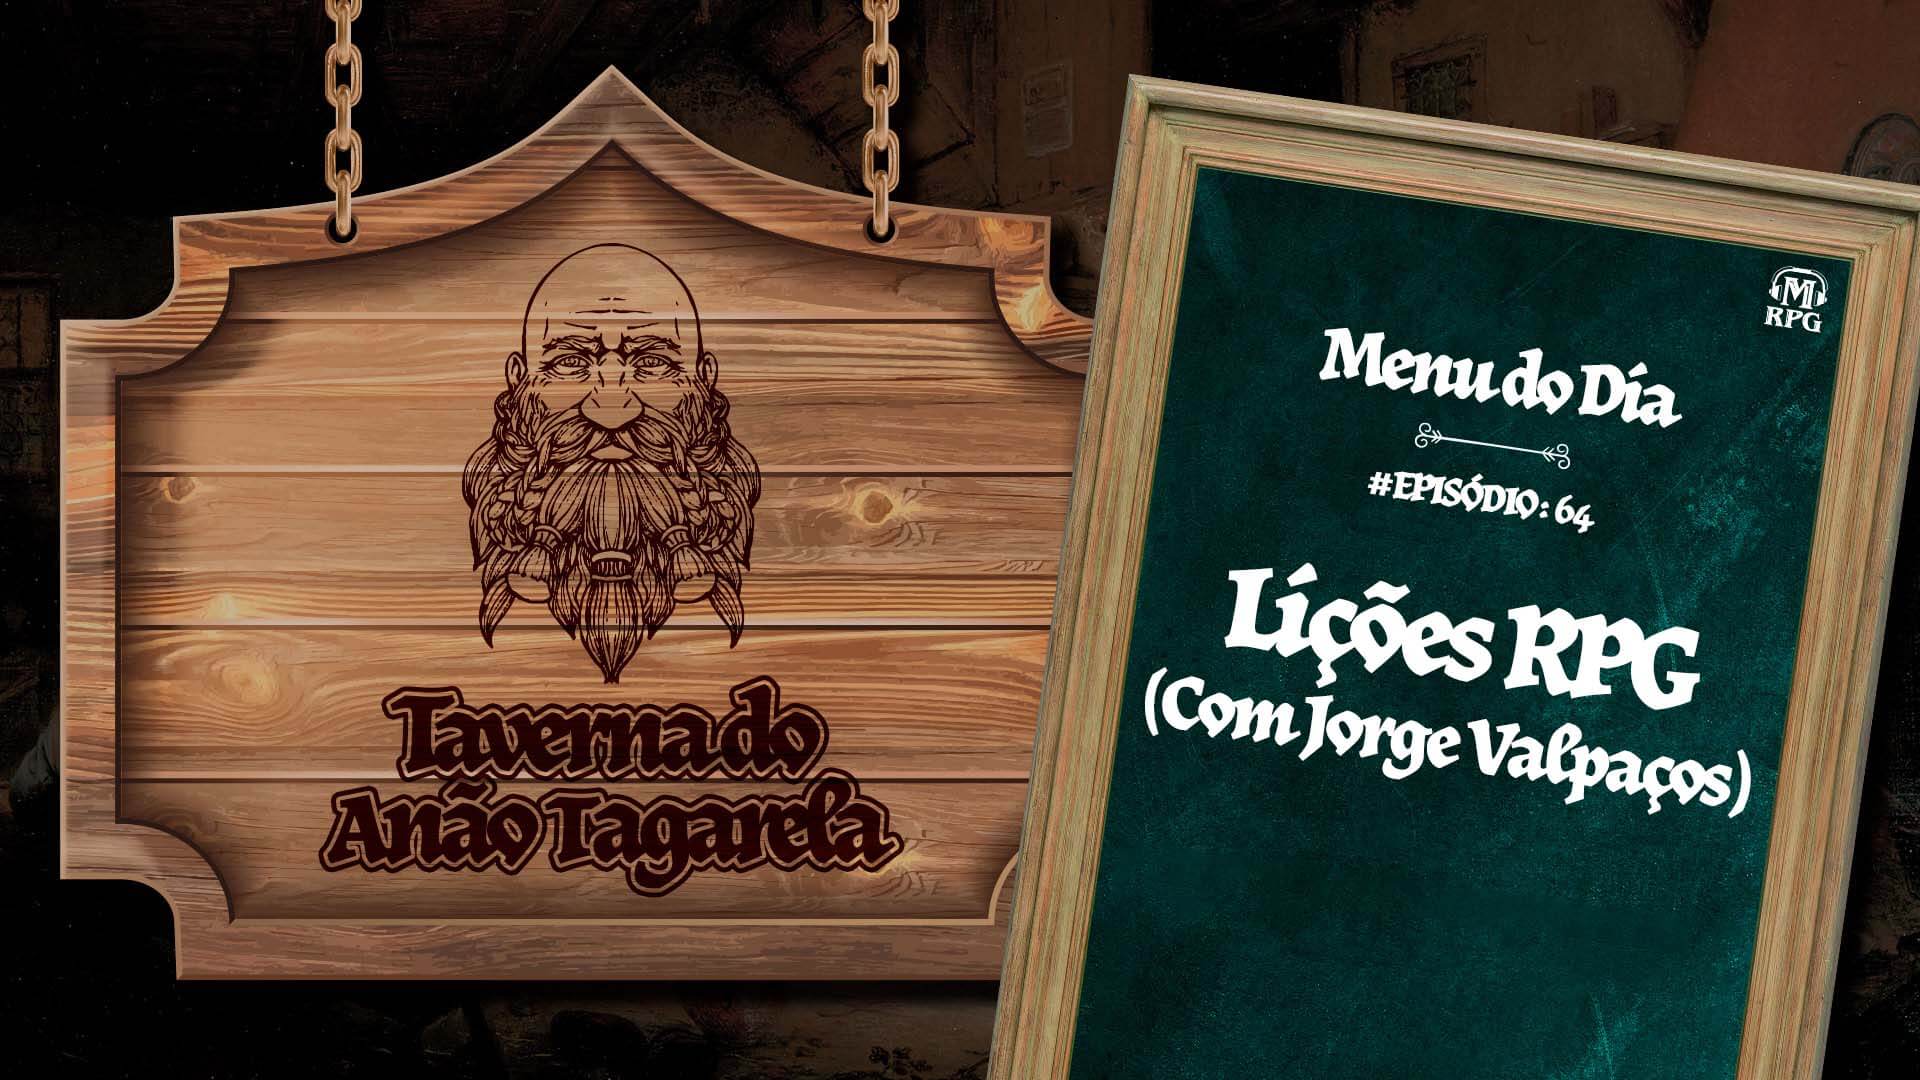 Lições RPG com Jorge Valpaços – Taverna do Anão Tagarela #64